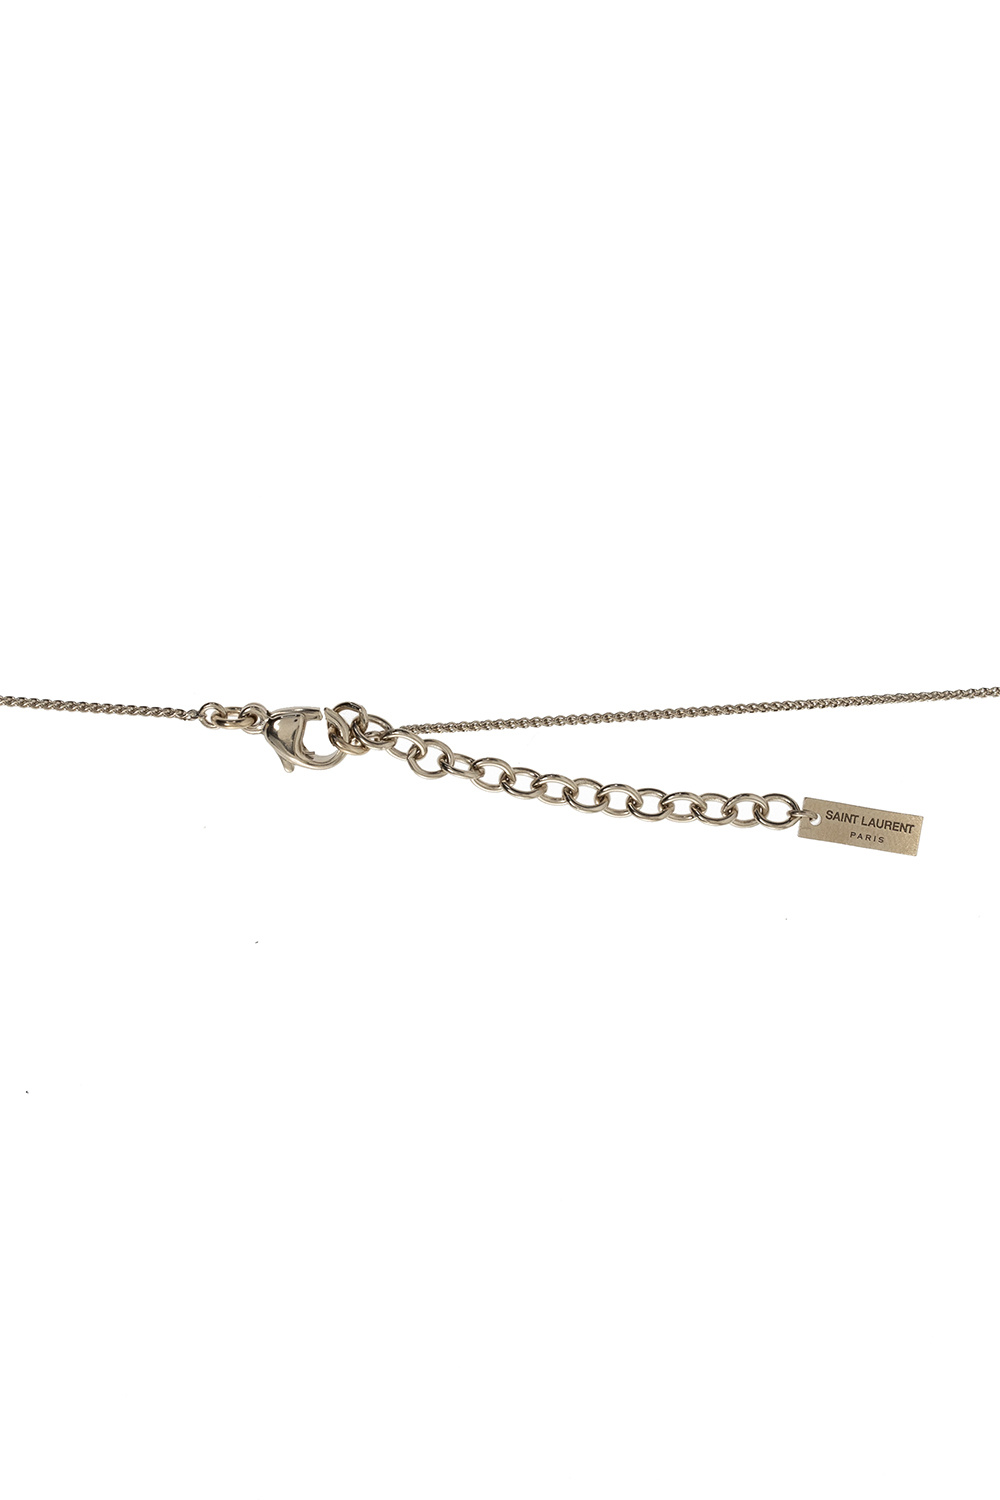 Saint Laurent Long necklace